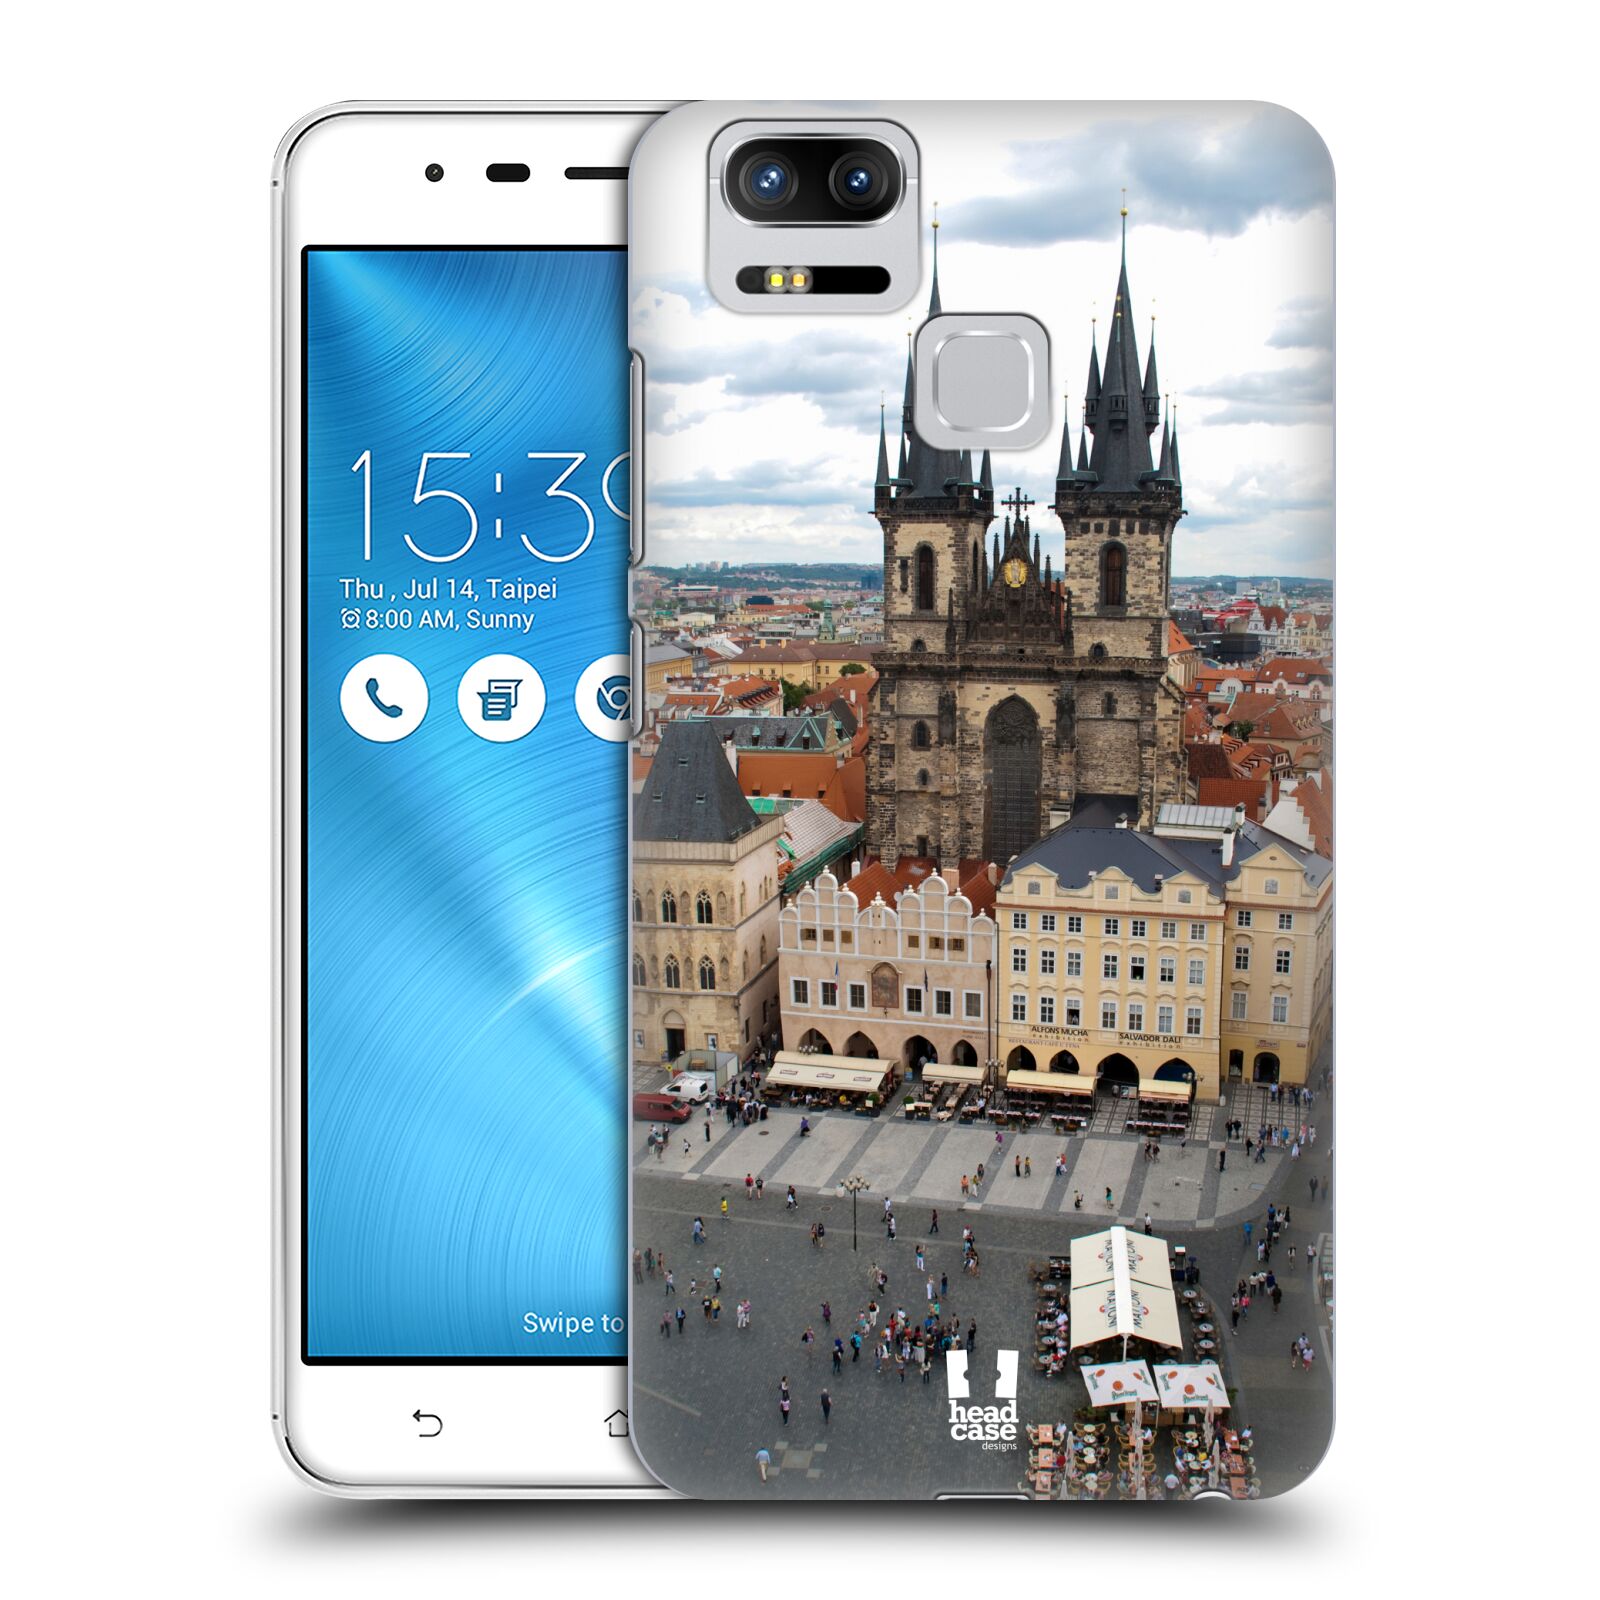 HEAD CASE plastový obal na mobil Asus Zenfone 3 Zoom ZE553KL vzor Města foto náměstí ČESKÁ REPUBLIKA, PRAHA, STAROMĚSTSKÉ NÁMĚSTÍ